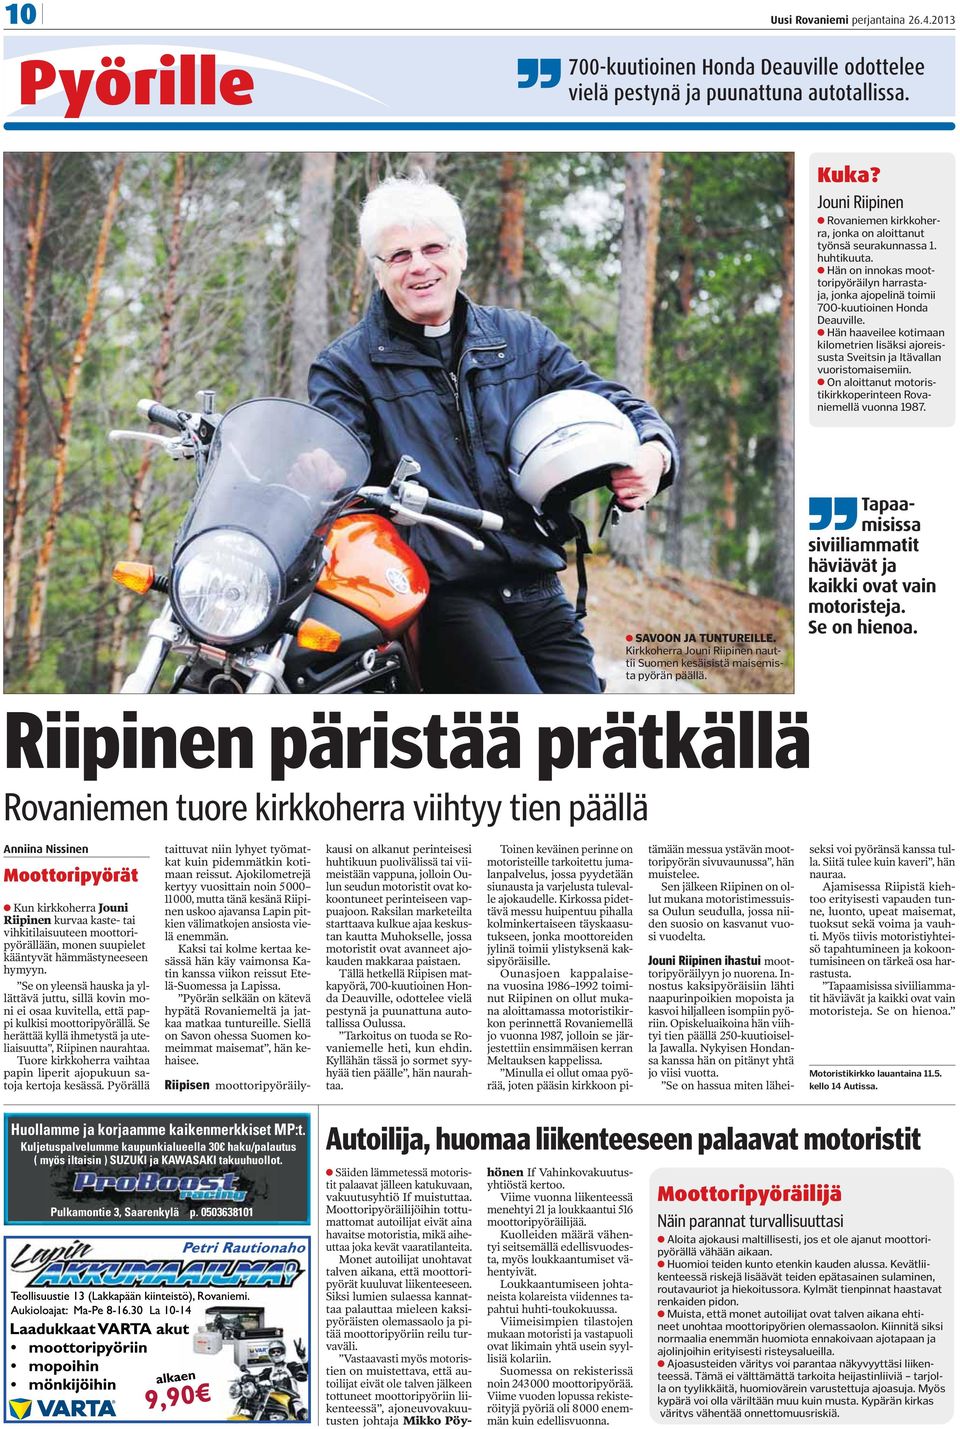 On aloittanut motoristikirkkoperinteen Rovaniemellä vuonna 1987. SAVOON JA TUNTUREILLE. Kirkkoherra Jouni Riipinen nauttii Suomen kesäisistä maisemista pyörän päällä.